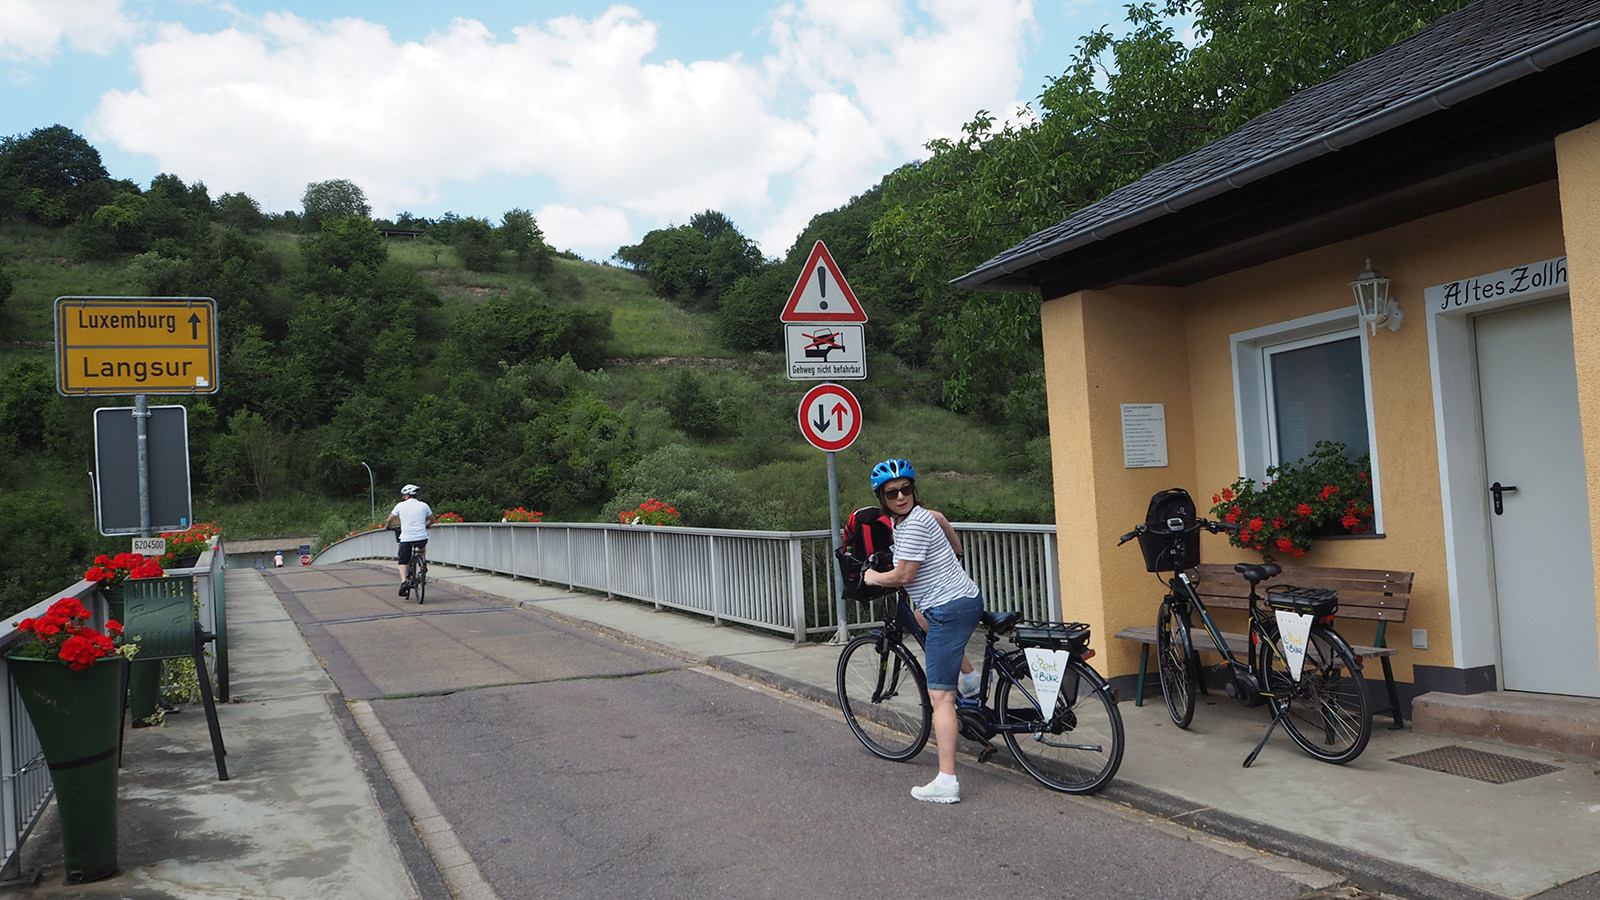 Pressereise-Radtour im Trierer Land: Wer in Langsur über die Brücke fährt, ist in Luxemburg. A1 Bescheinigung dabei?  (Foto: Heidrun Braun)